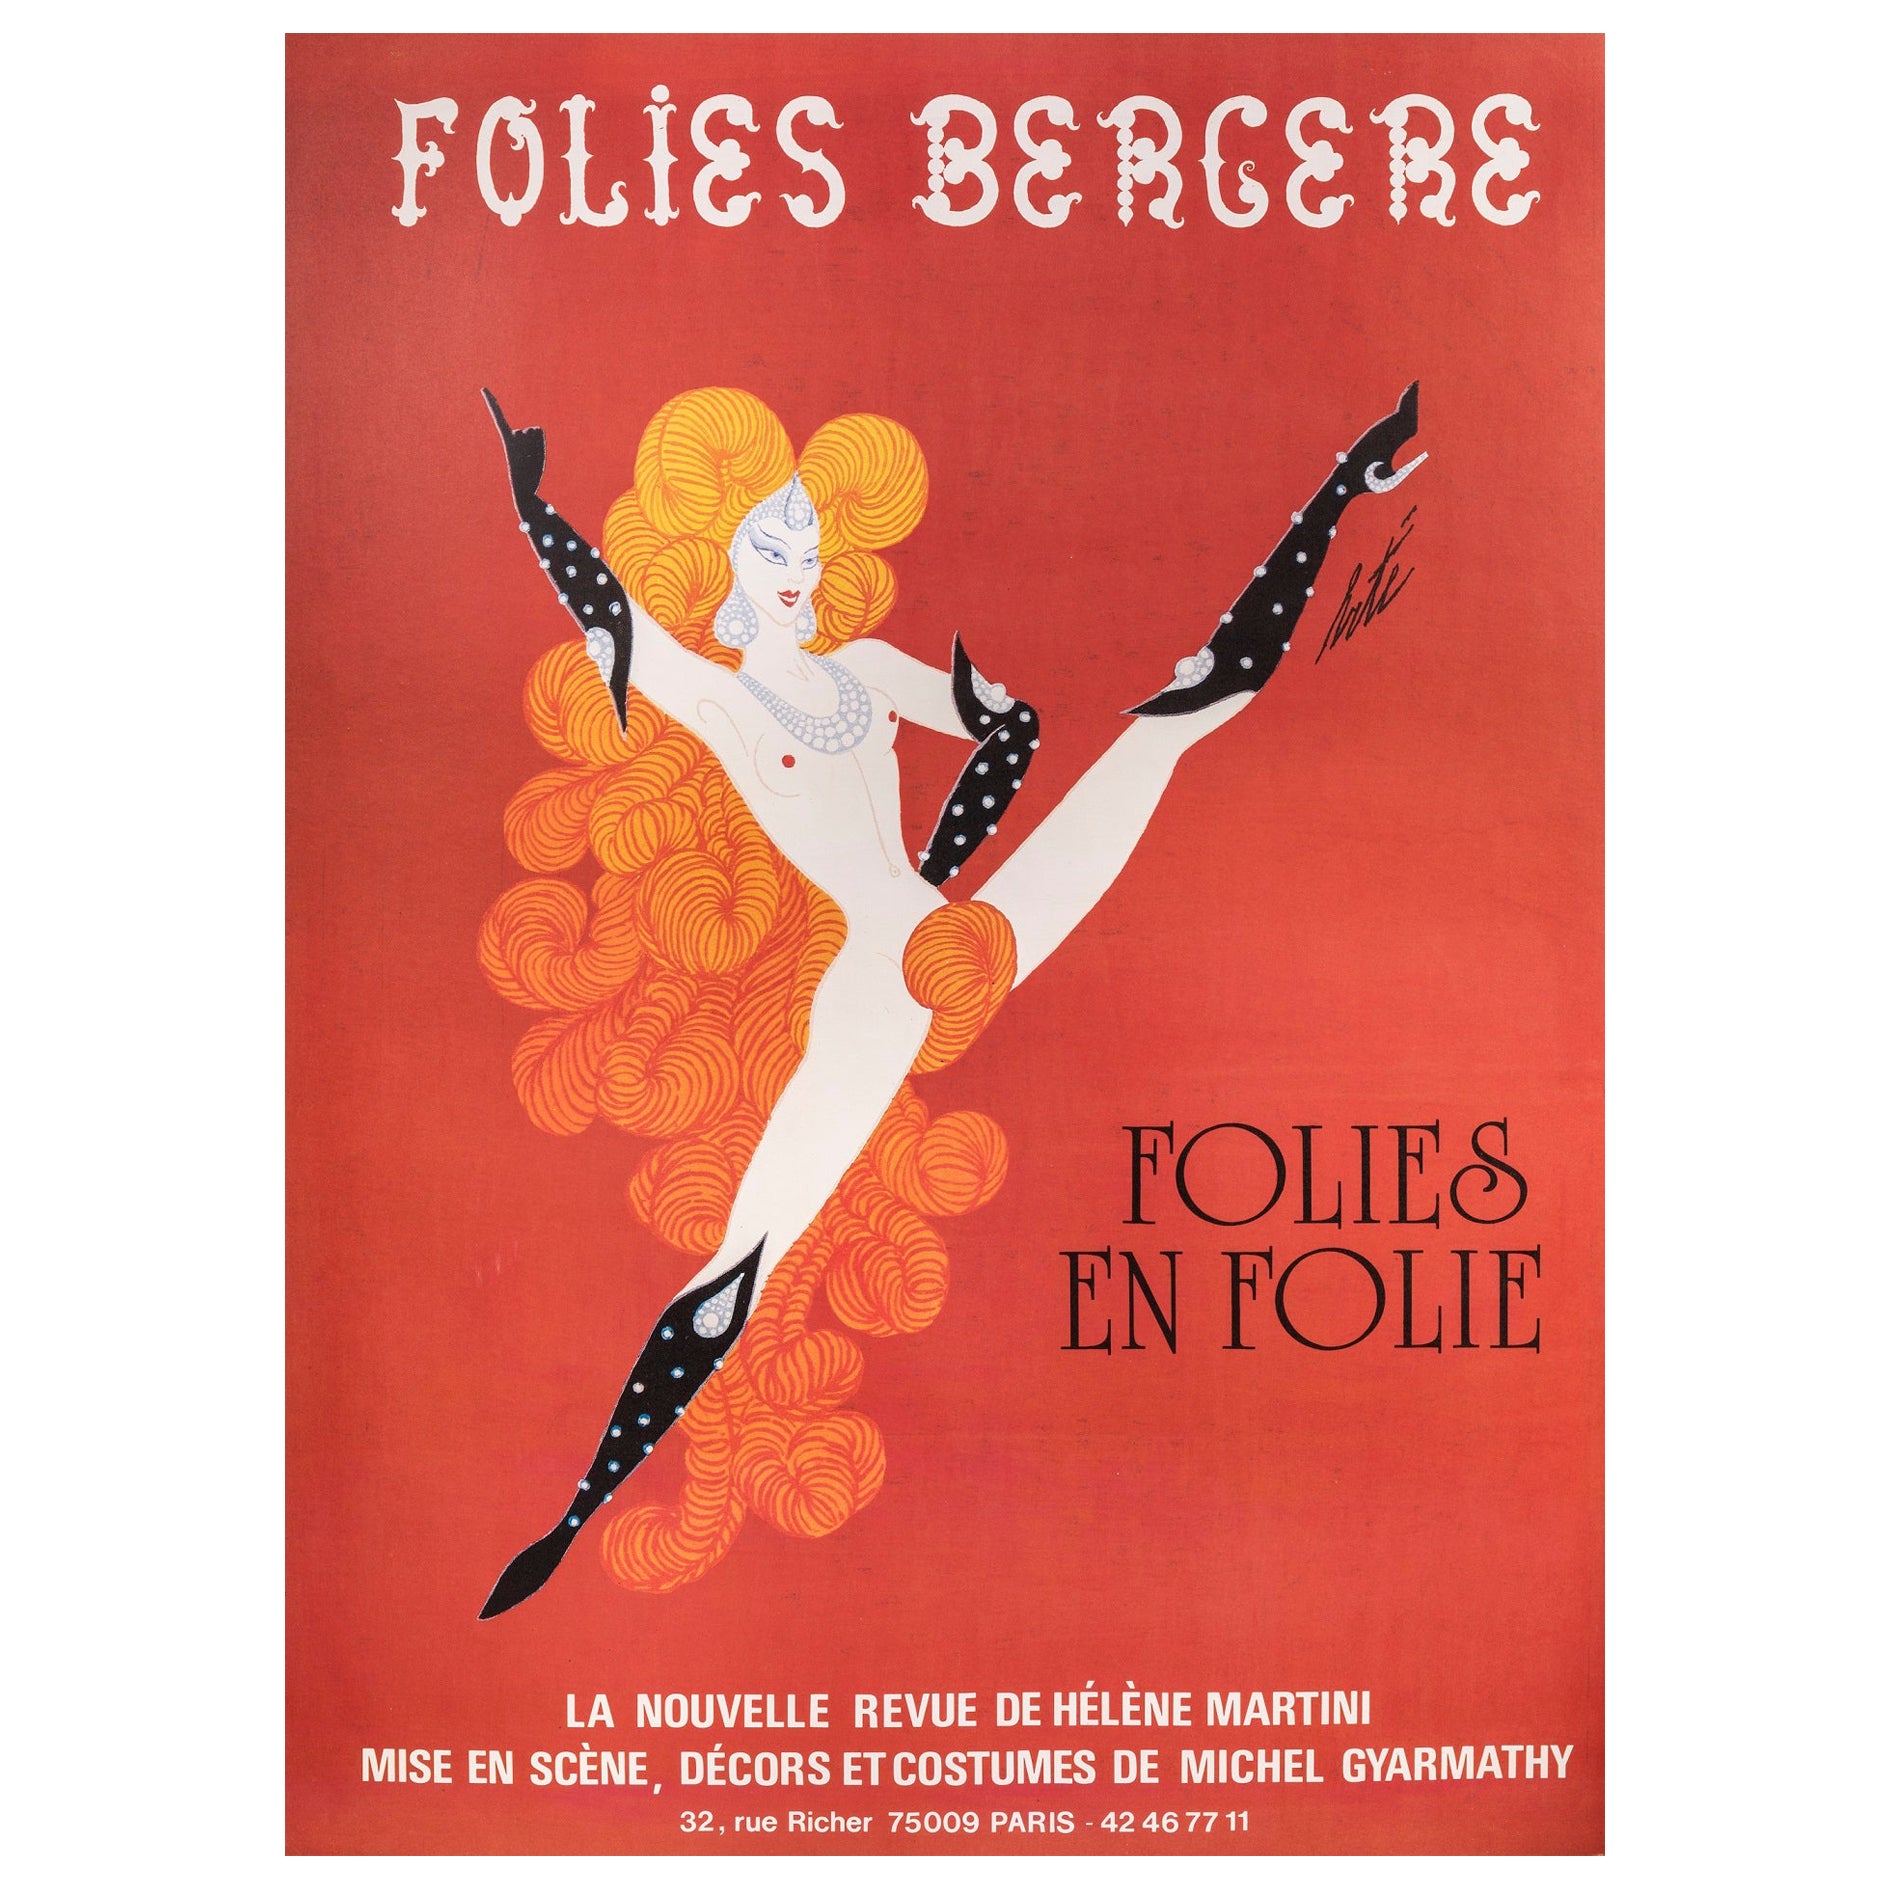 Folies Bergere, Folies en Folie! Poster by Erté